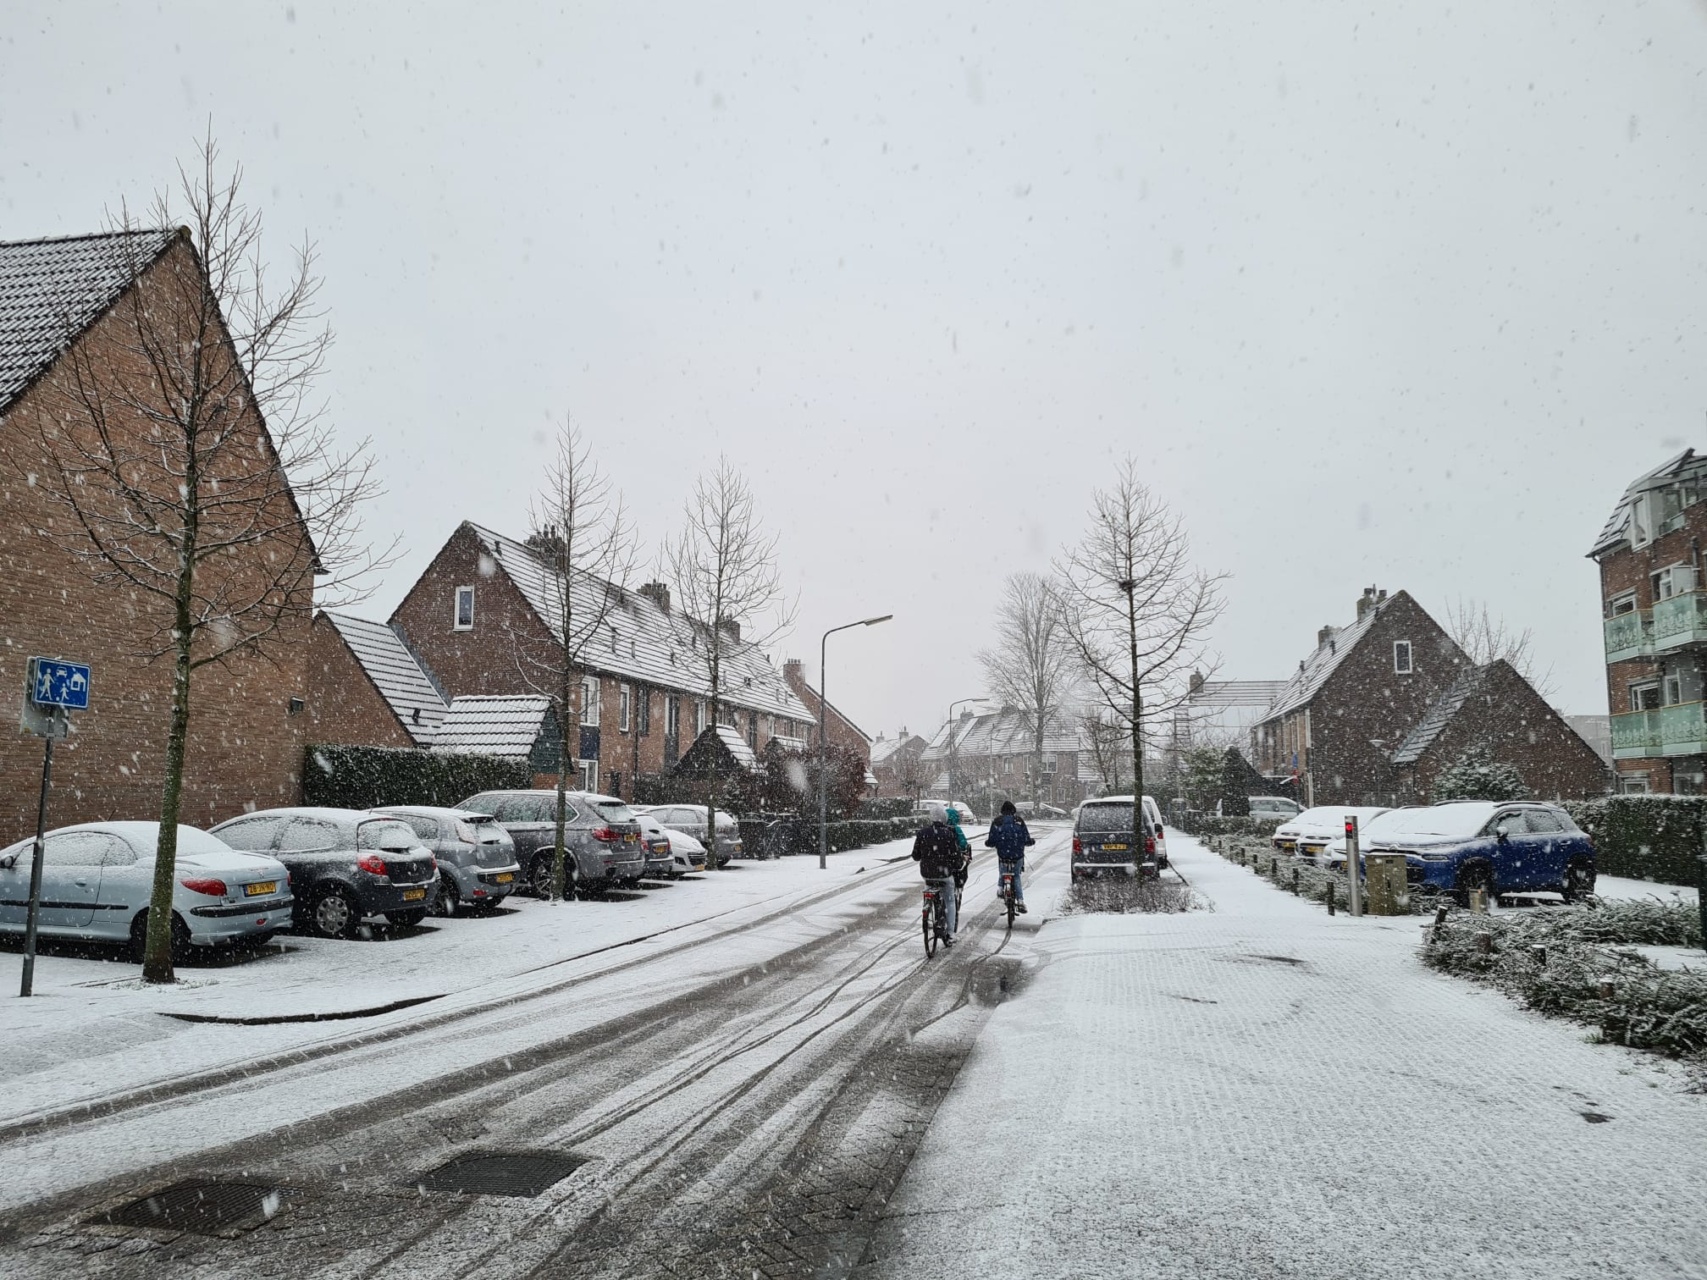 Sneeuwbuien in aantocht voor Nederland! Blijft de sneeuw liggen?